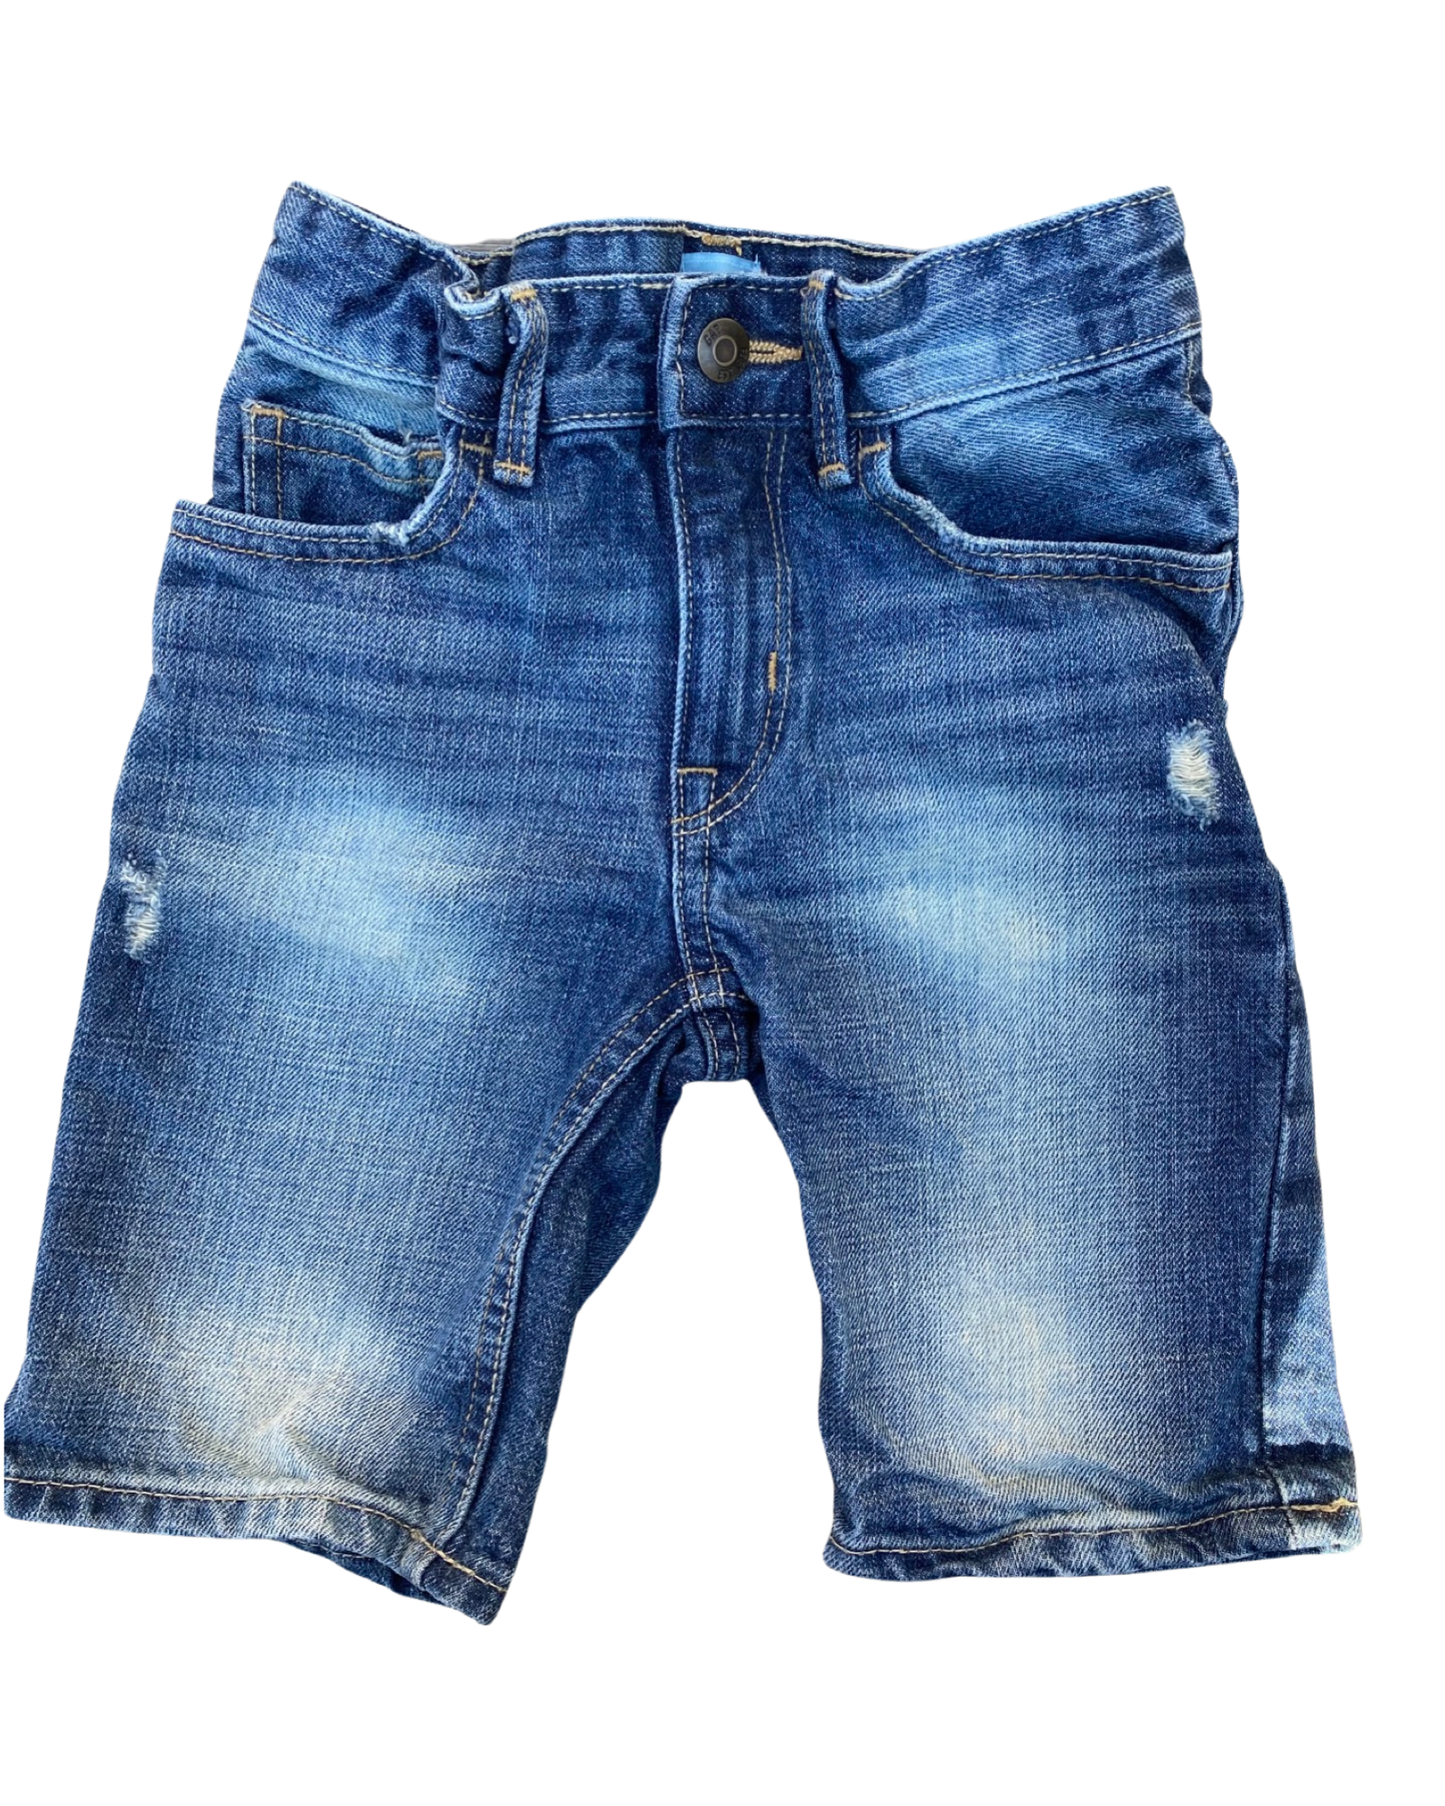 Baby Gap dark wash denim shorts (3-4yrs)